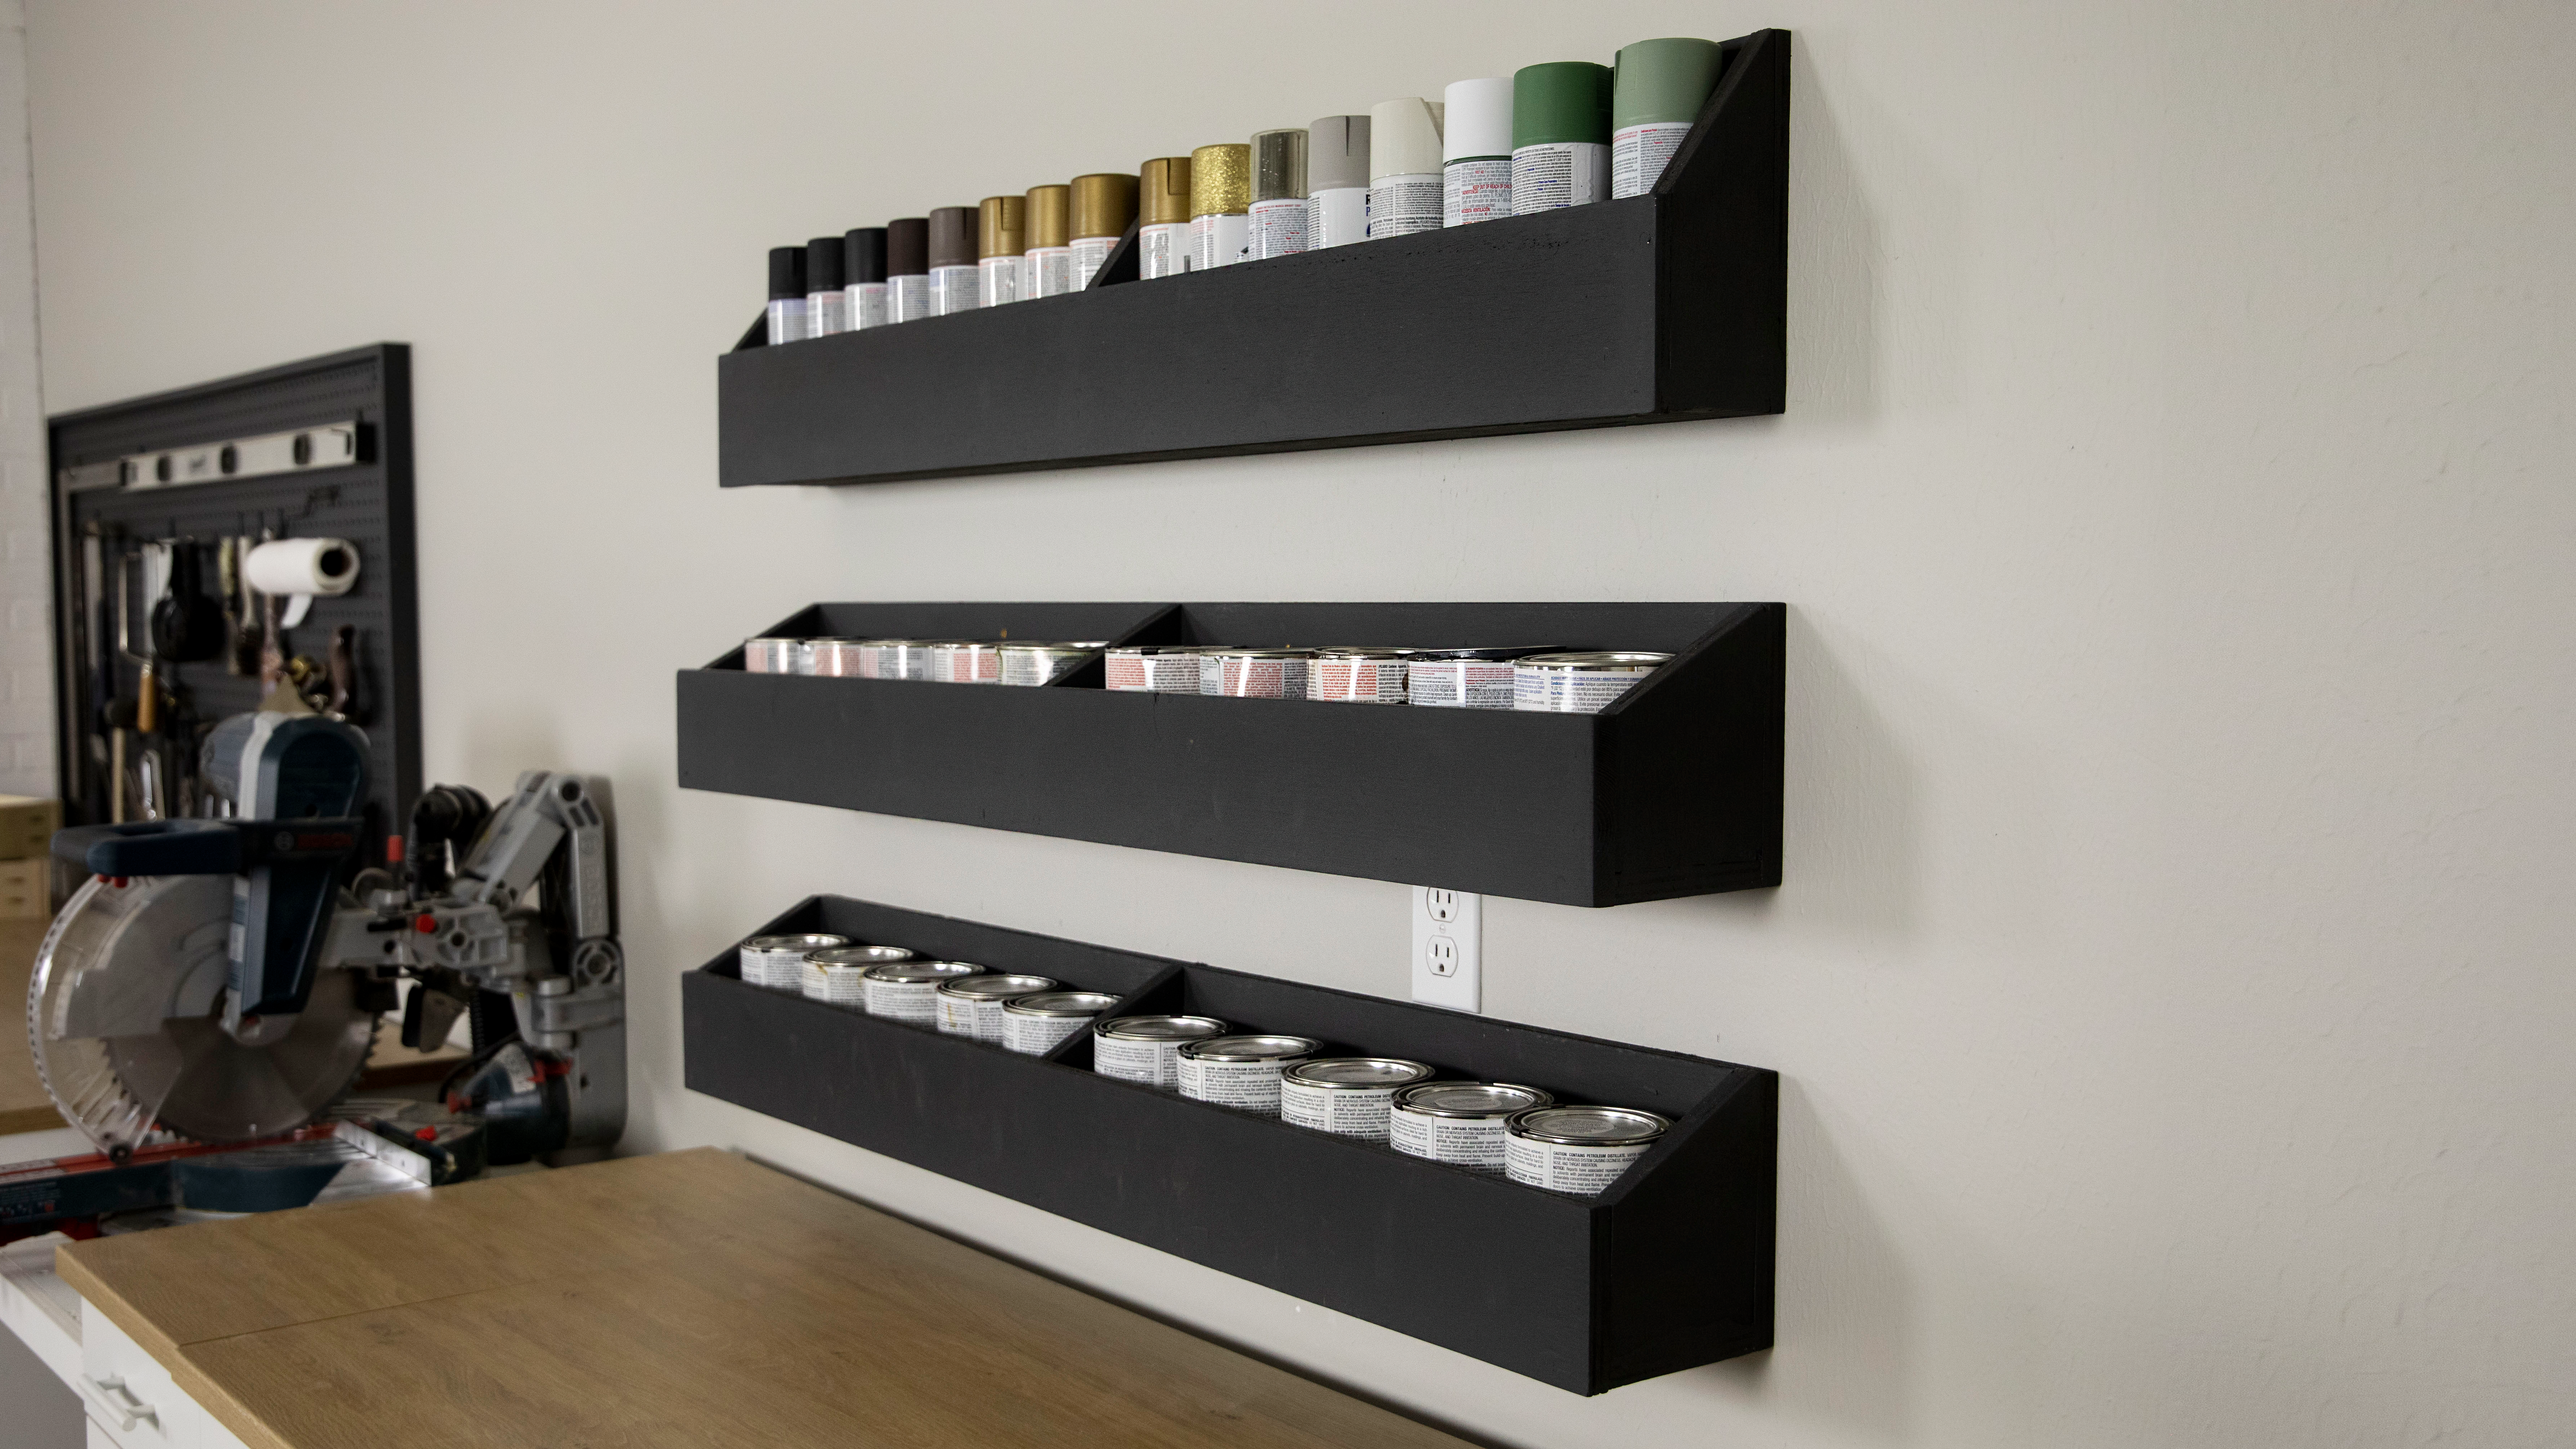 DIY Trough Shelves to Store Paint